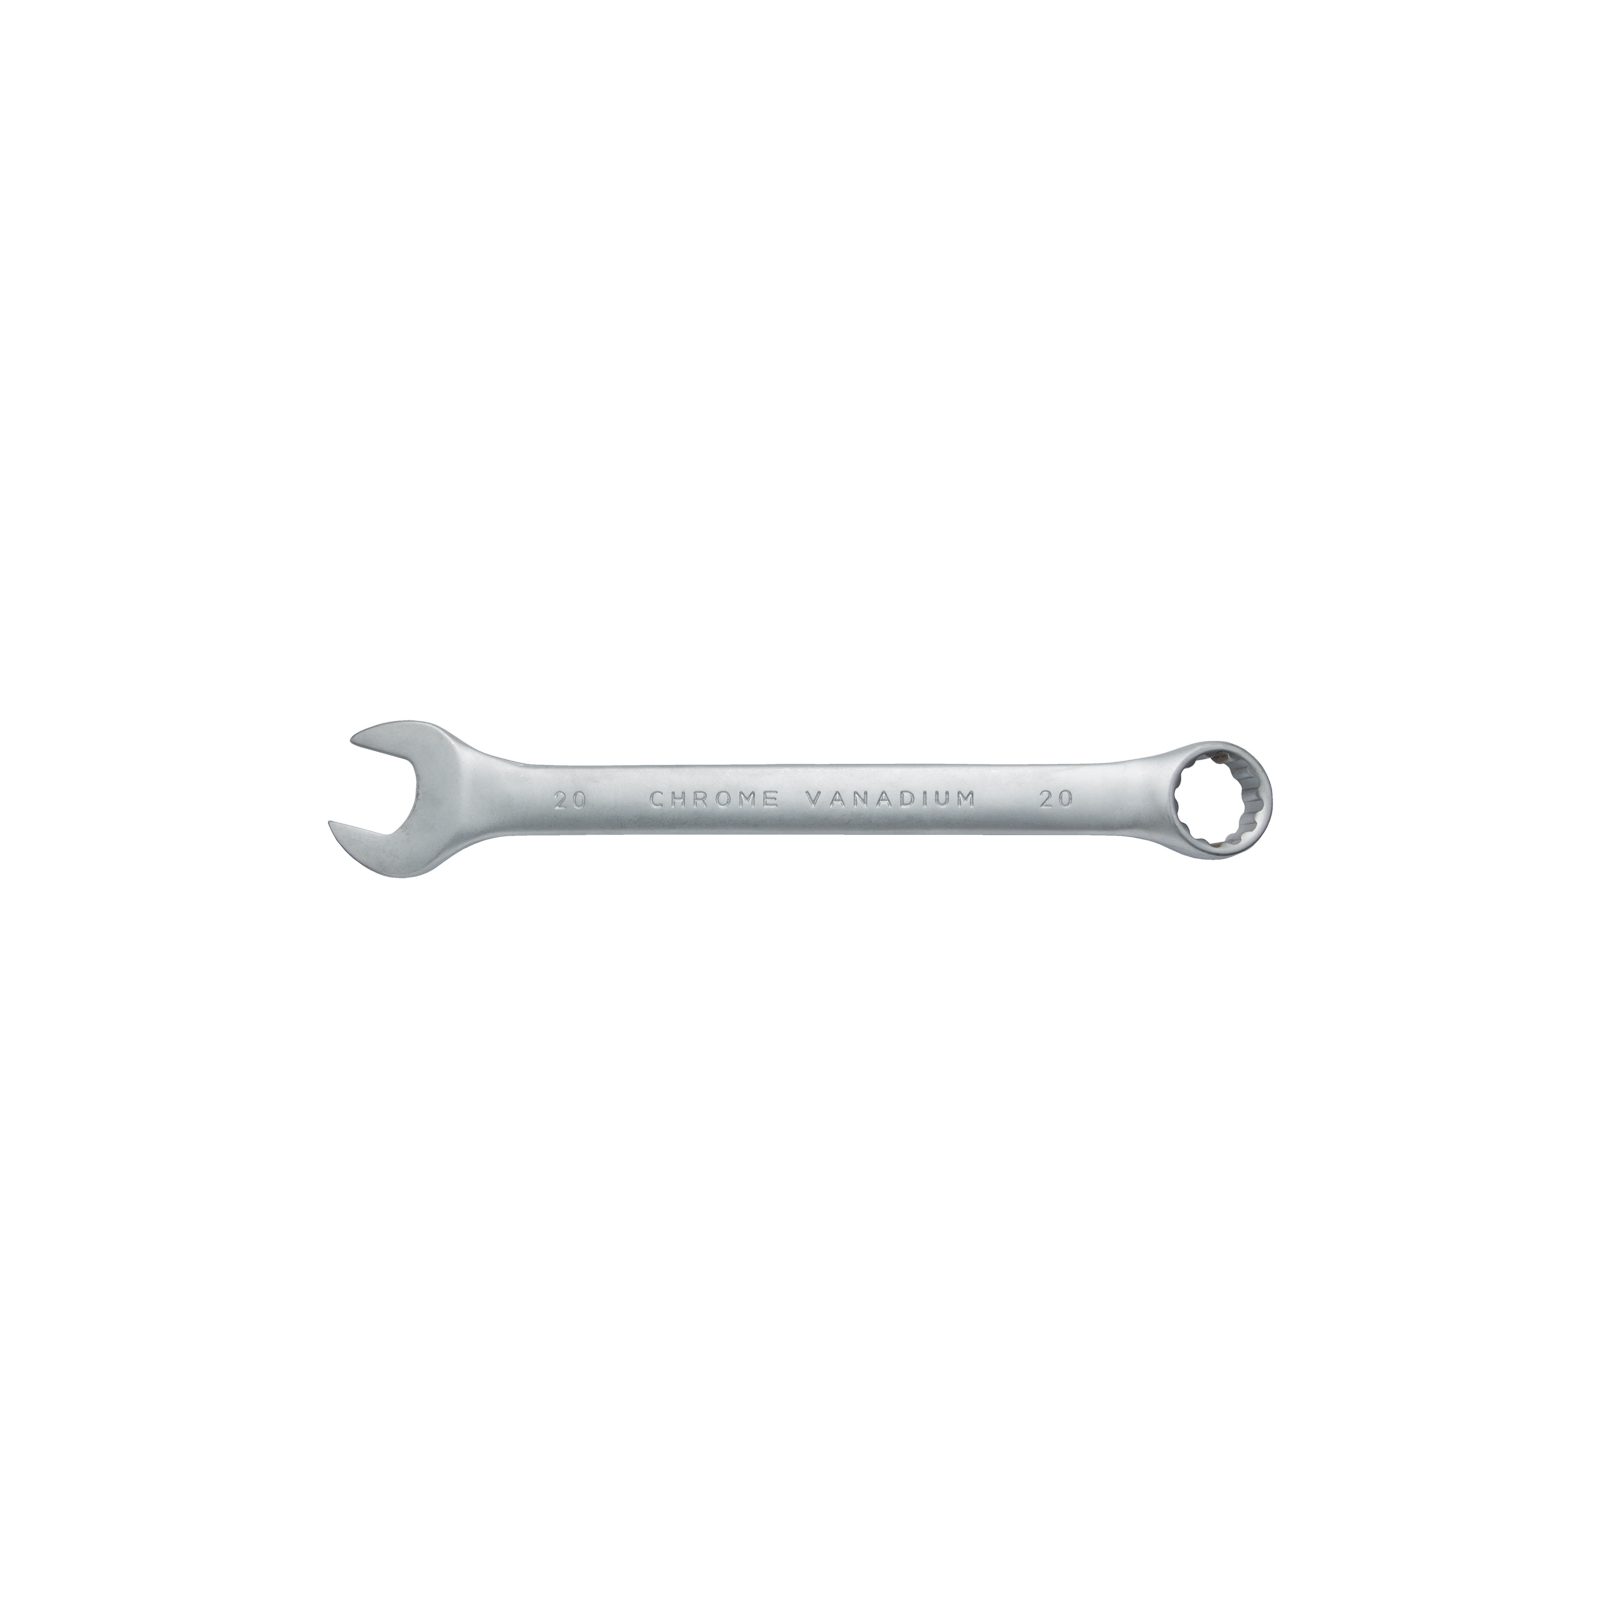 Ключ Sigma рожково-накидной 15мм CrV satine с подвесом (6021601) изображение 2